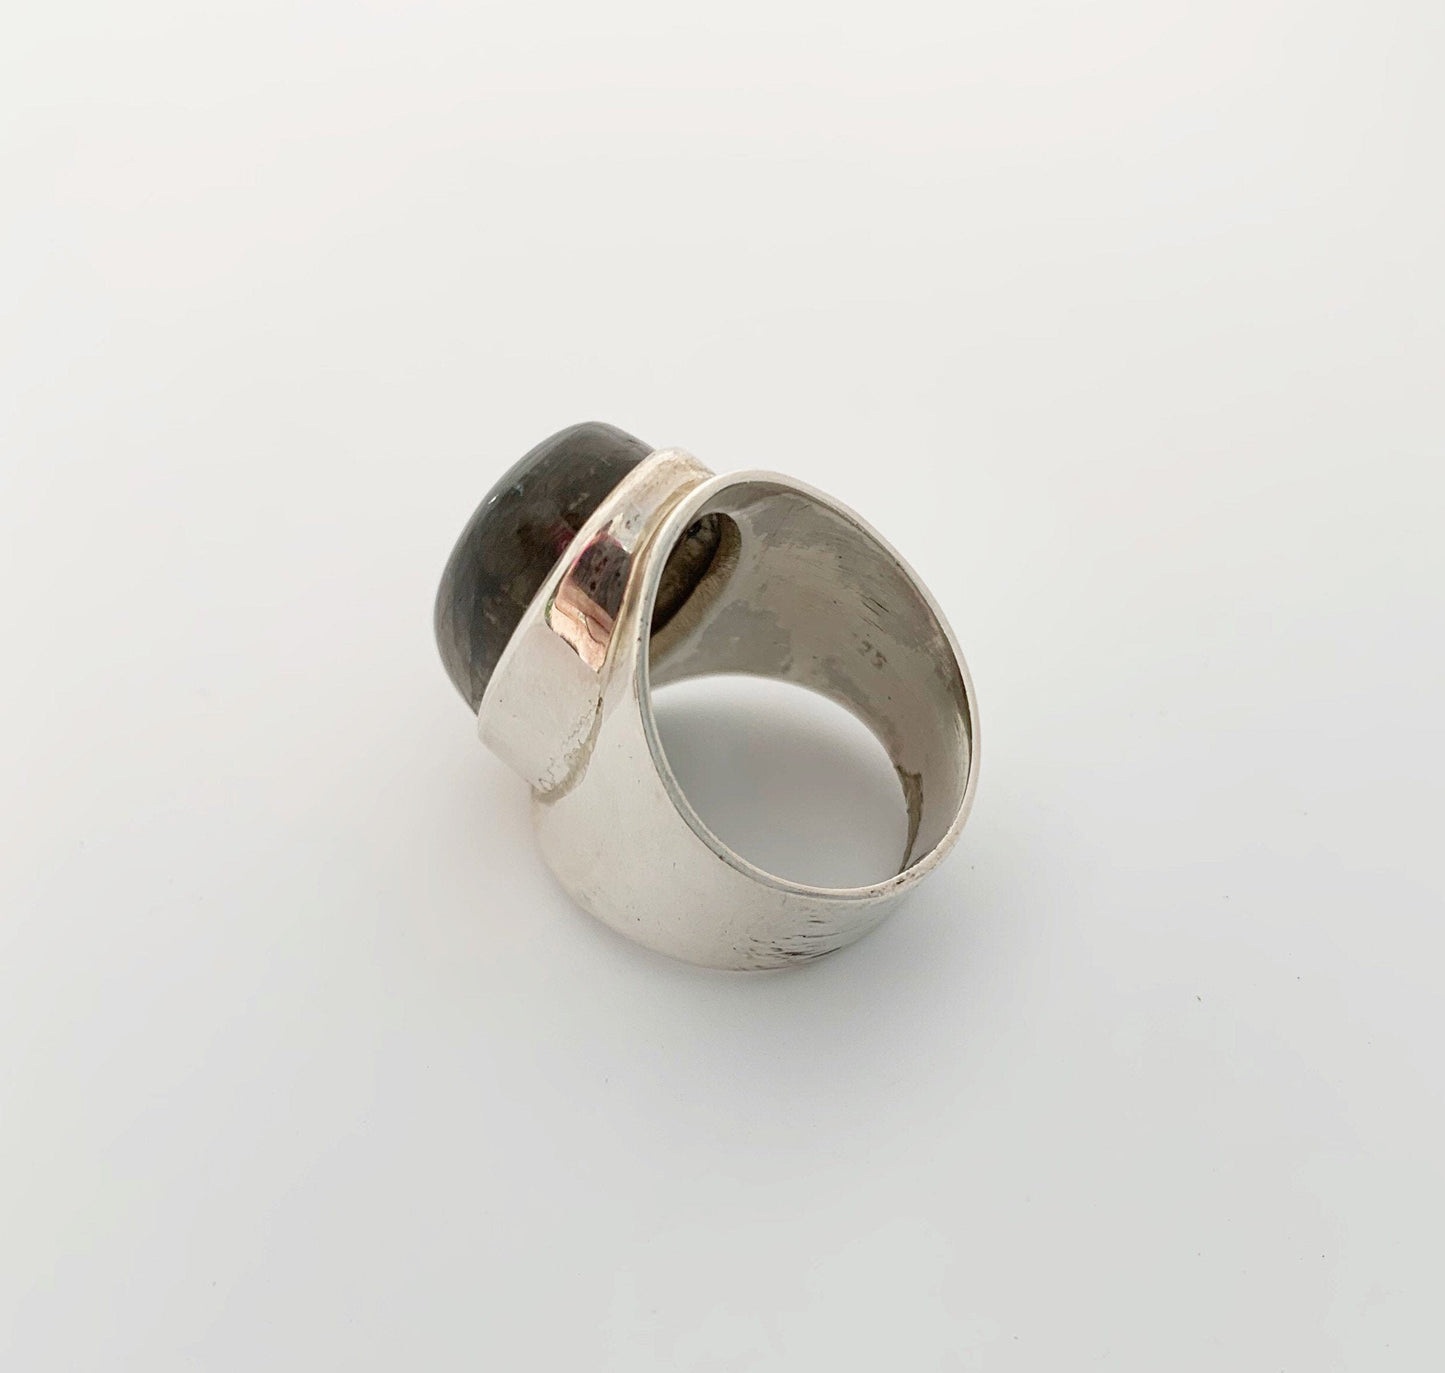 Vintage Silver Labradorite Ring | Large Labradorite Ring | Size 9 1/4 Ring